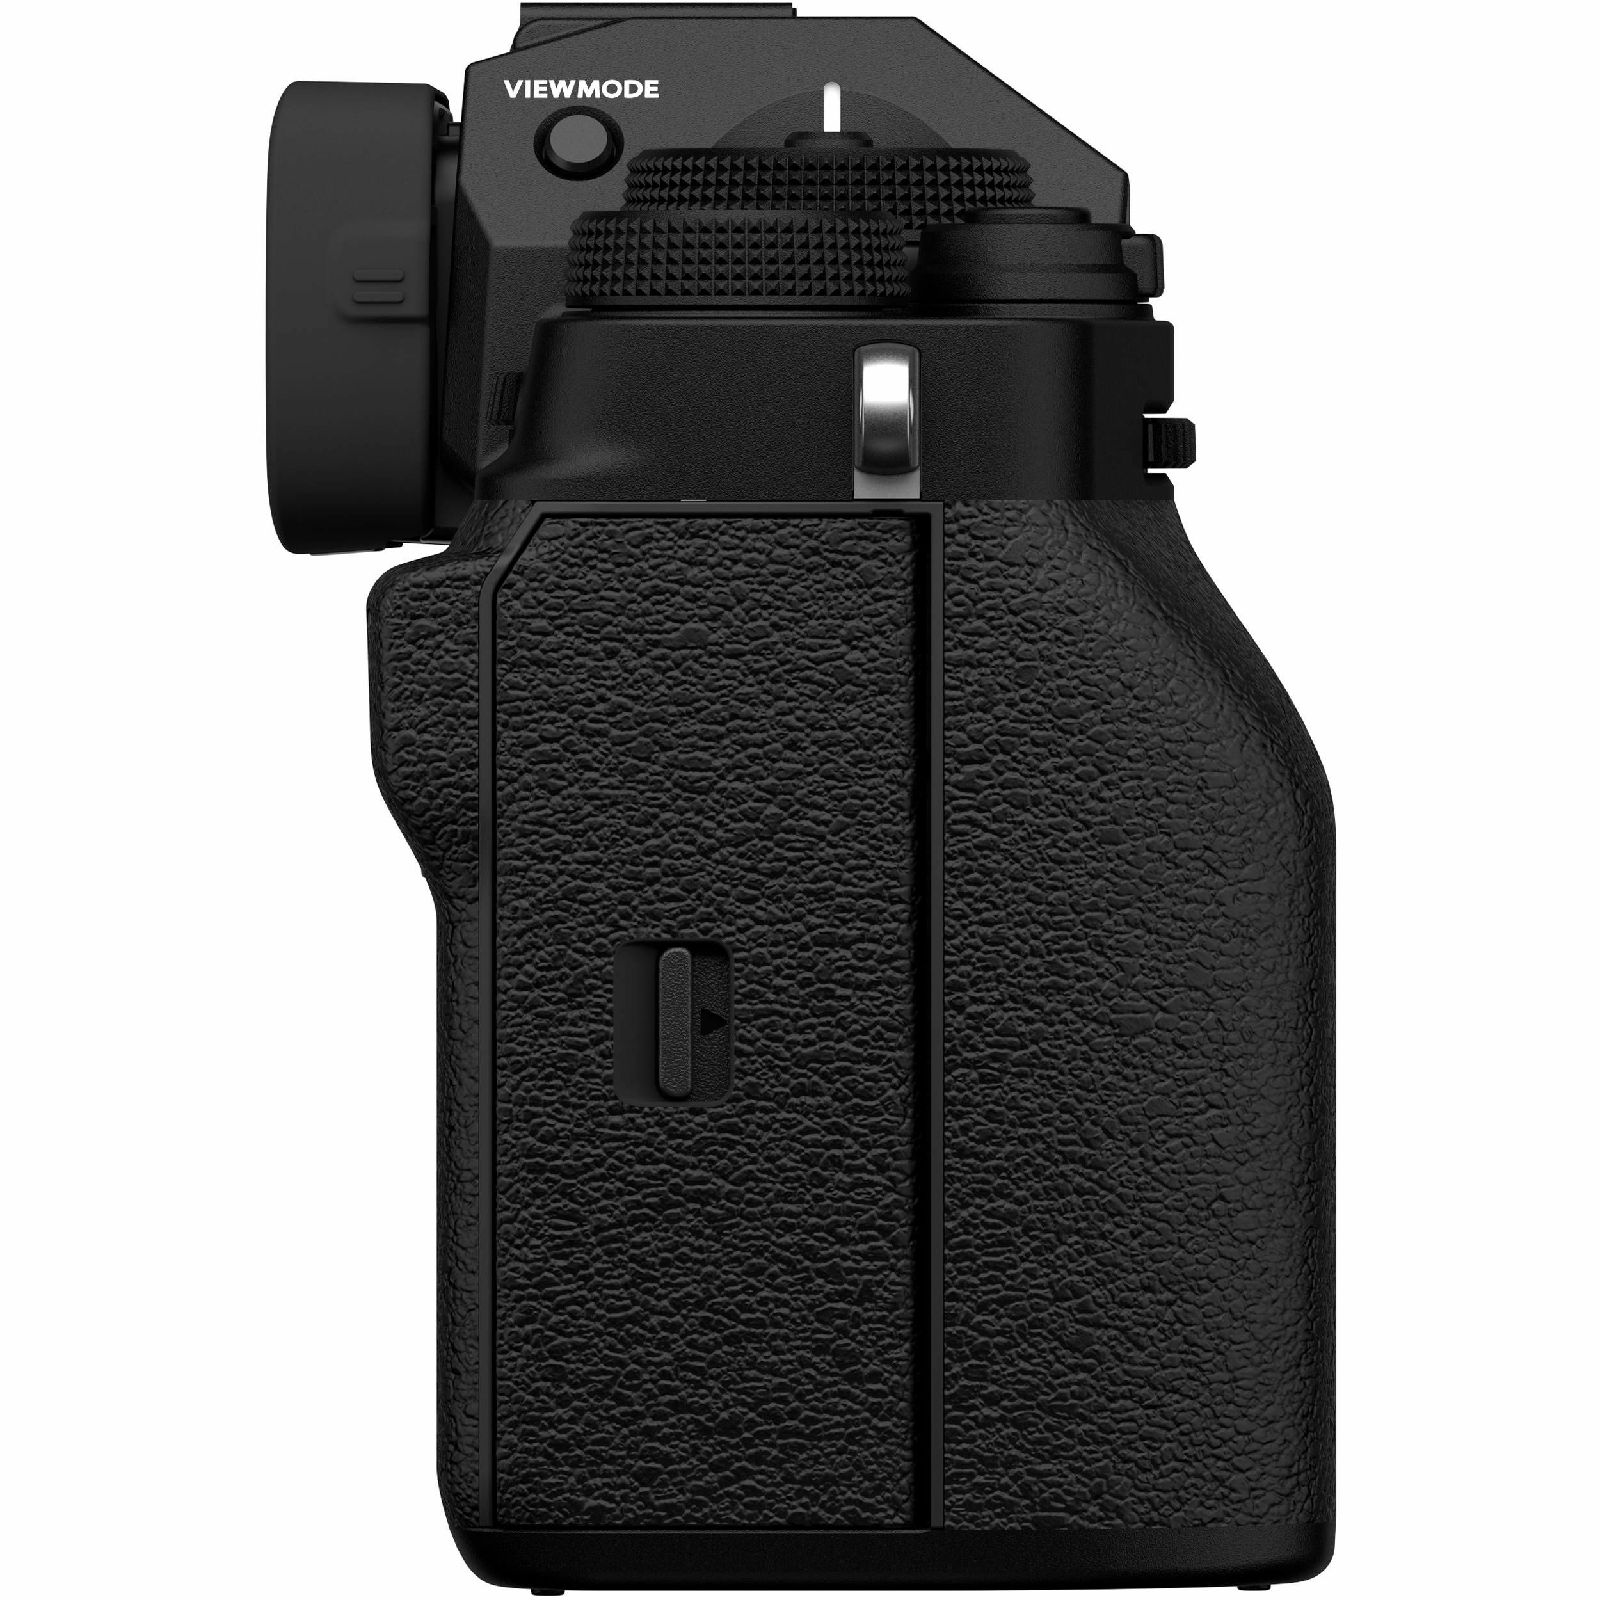 Fujifilm X-T4 + XF 18-55mm f/2.8-4 R LM OIS Black KIT crni Fuji digitalni mirrorless fotoaparat s objektivom (16650742)